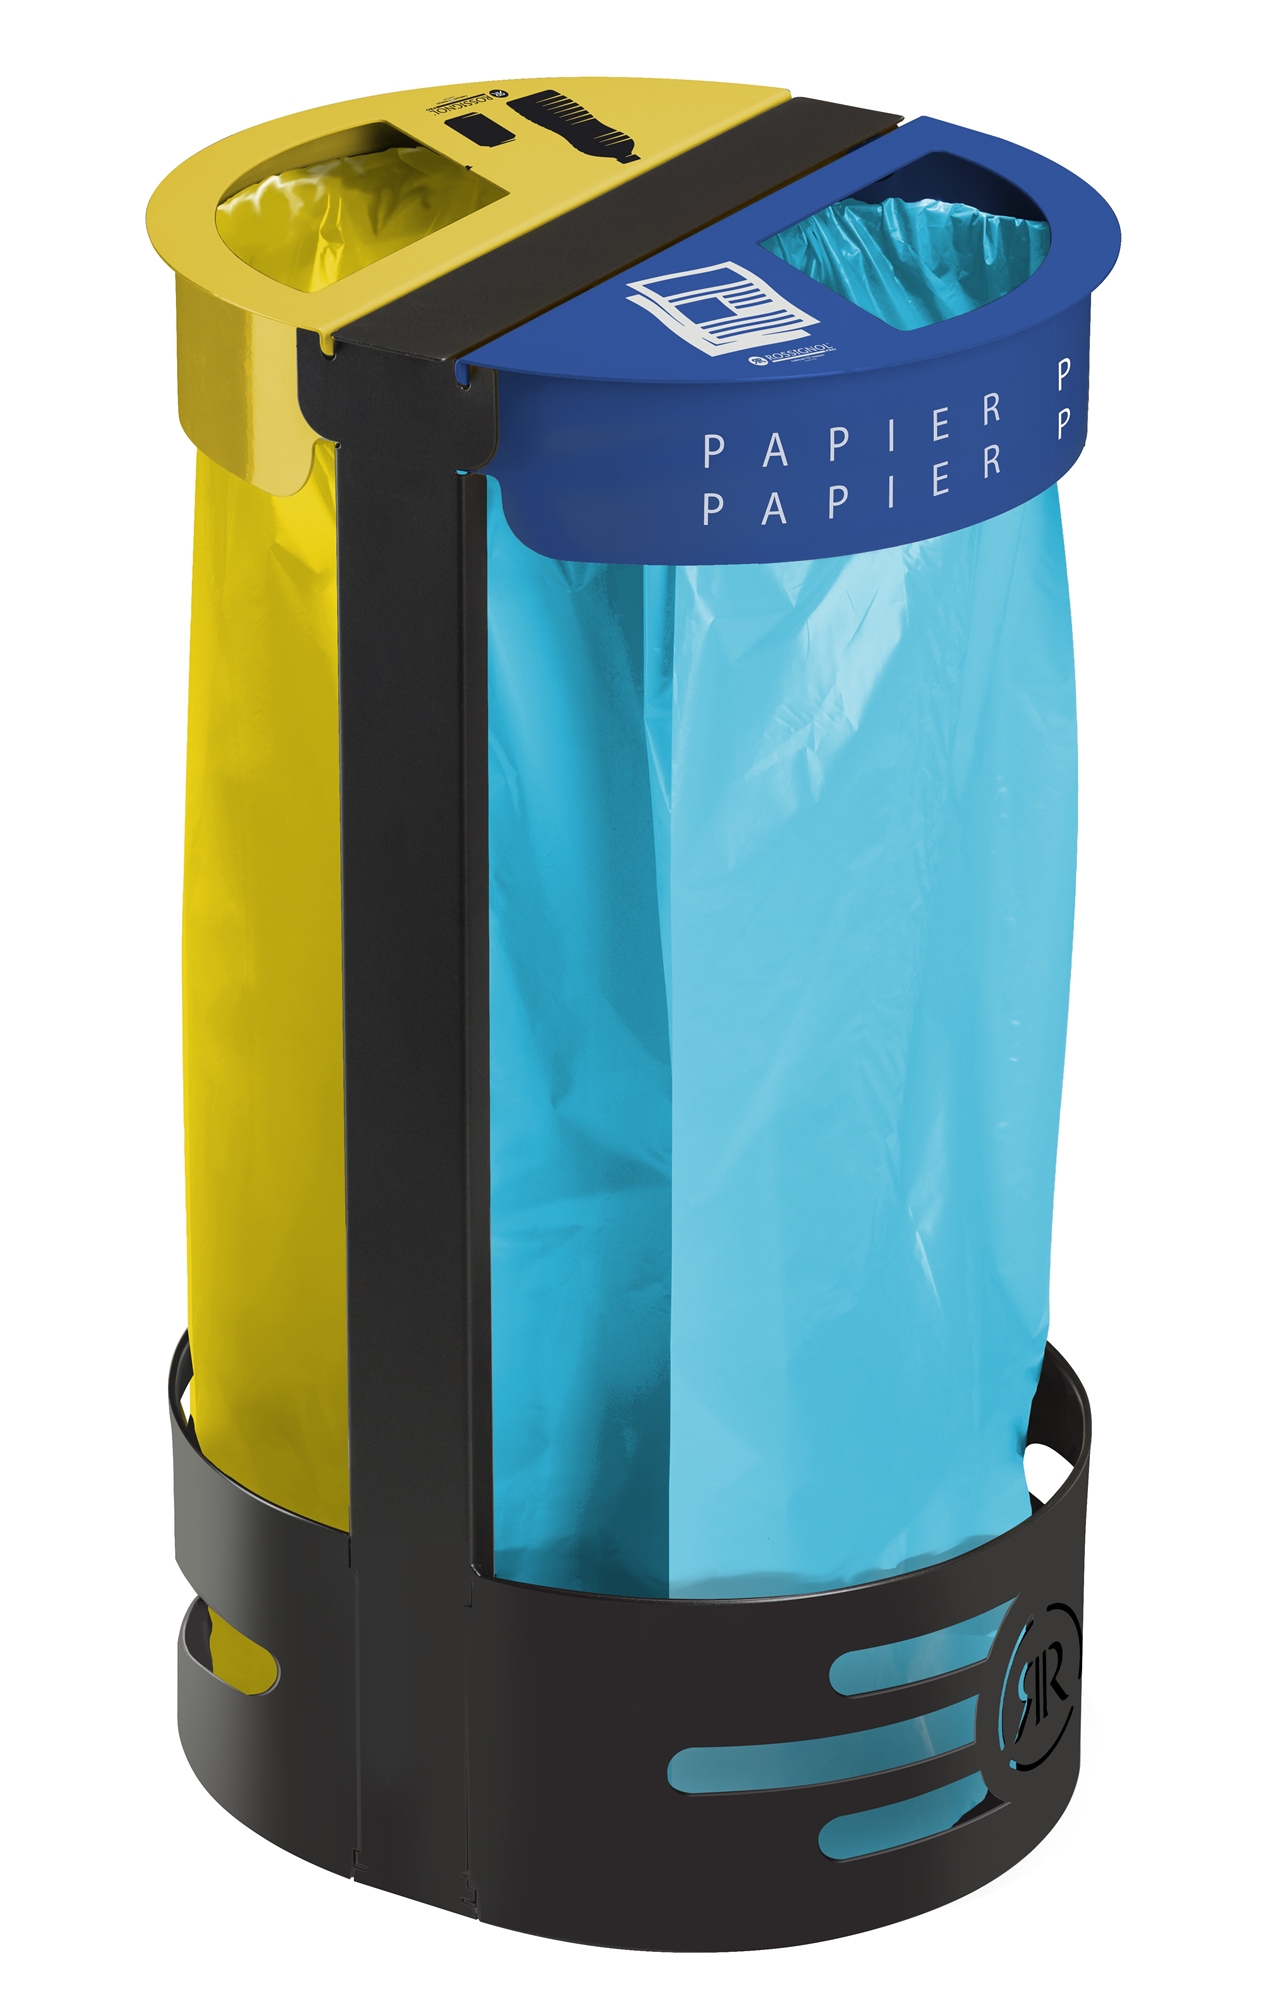 Support sac poubelle poser ou fixer rossignol deux flux jaune et bleu